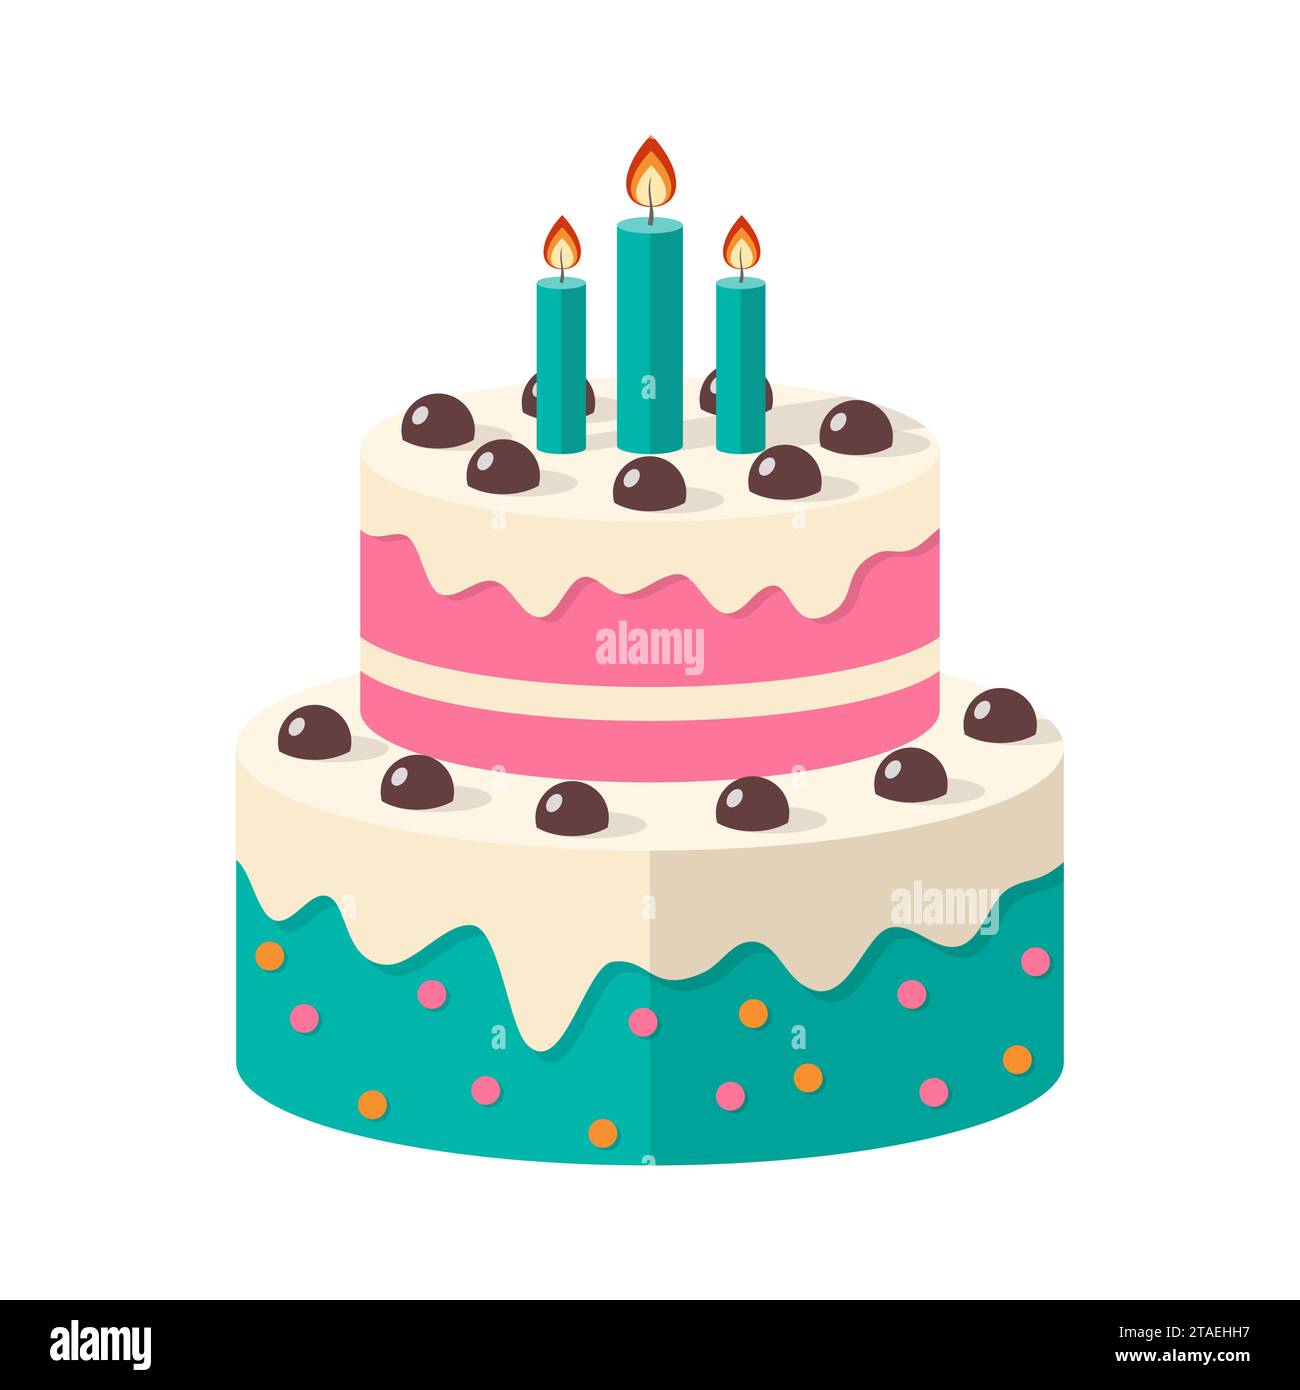 Una graziosa icona della torta di compleanno con candele. Dessert tradizionale per feste o celebrazioni. Dolci dolci. Illustrazione vettoriale. Illustrazione Vettoriale